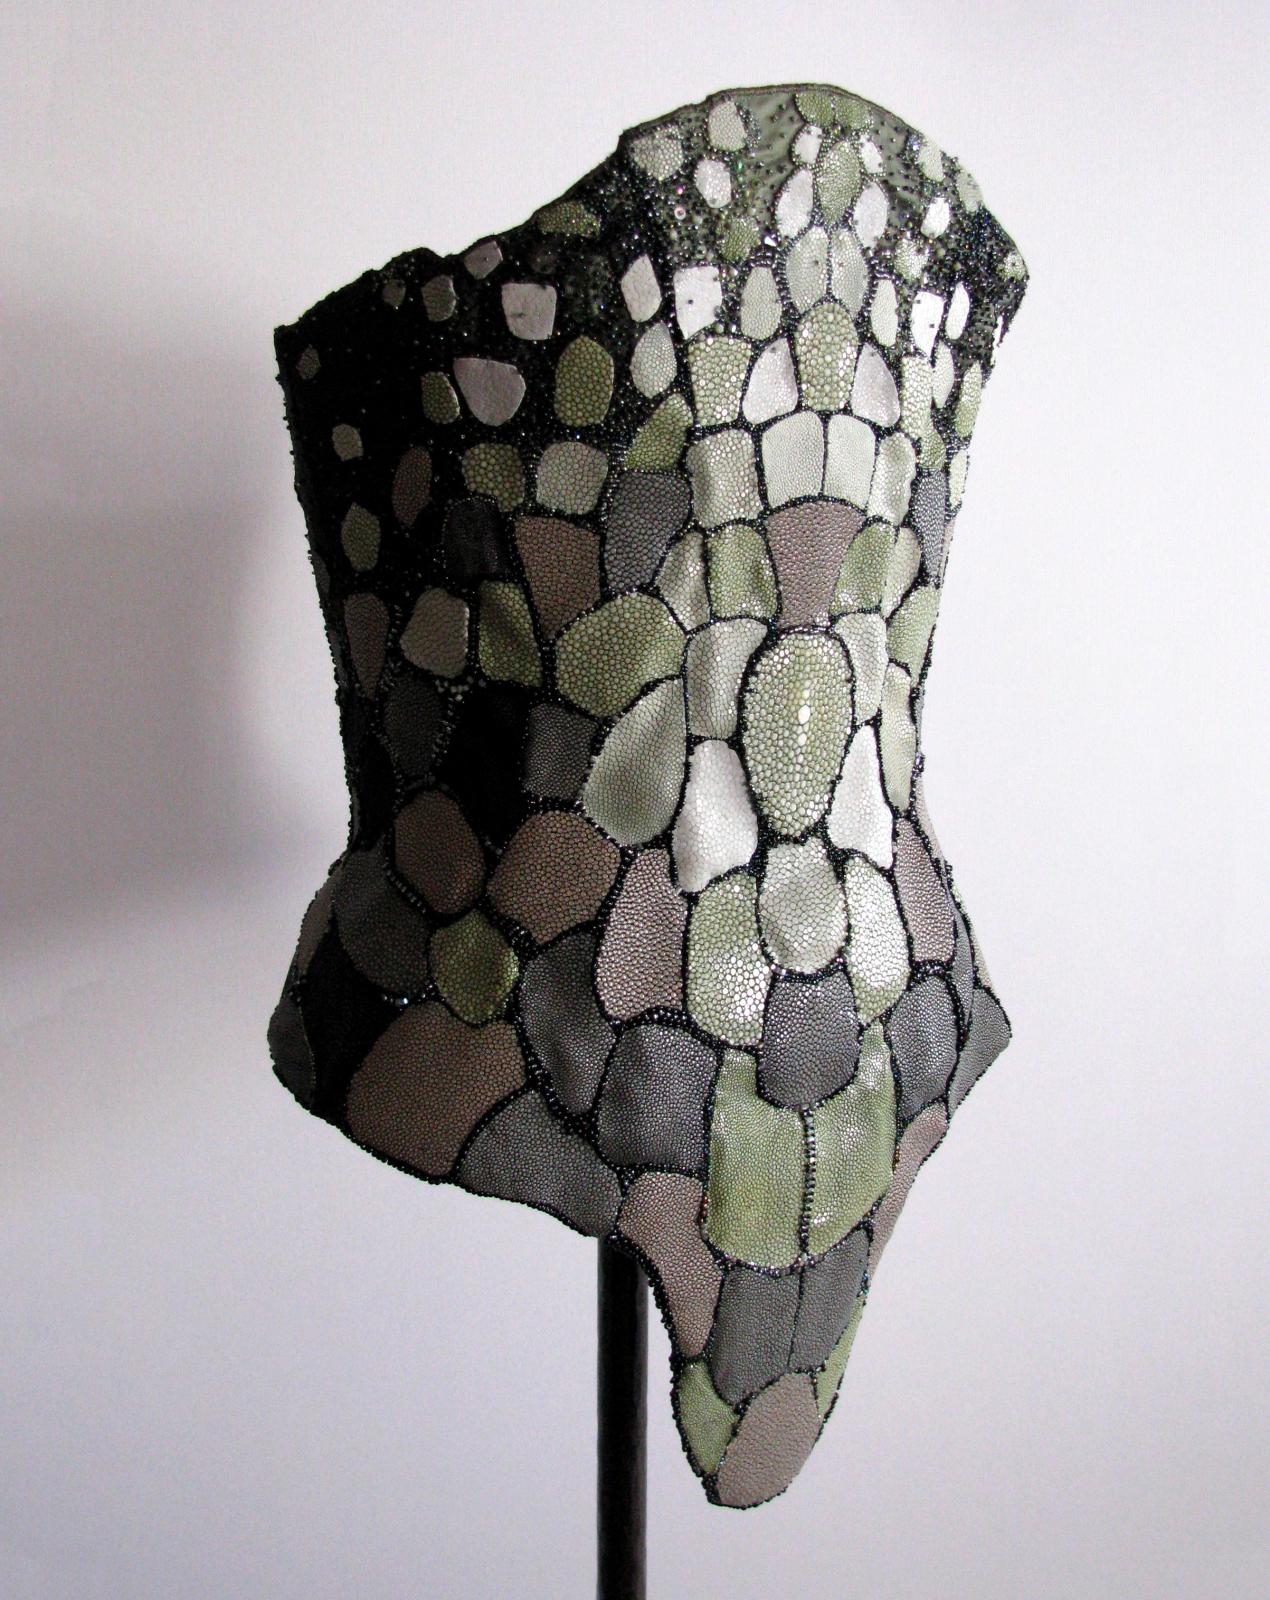 Corset femme Serpent, taffetas de soie, galuchat et perles de cristal Swarovski 2012. 